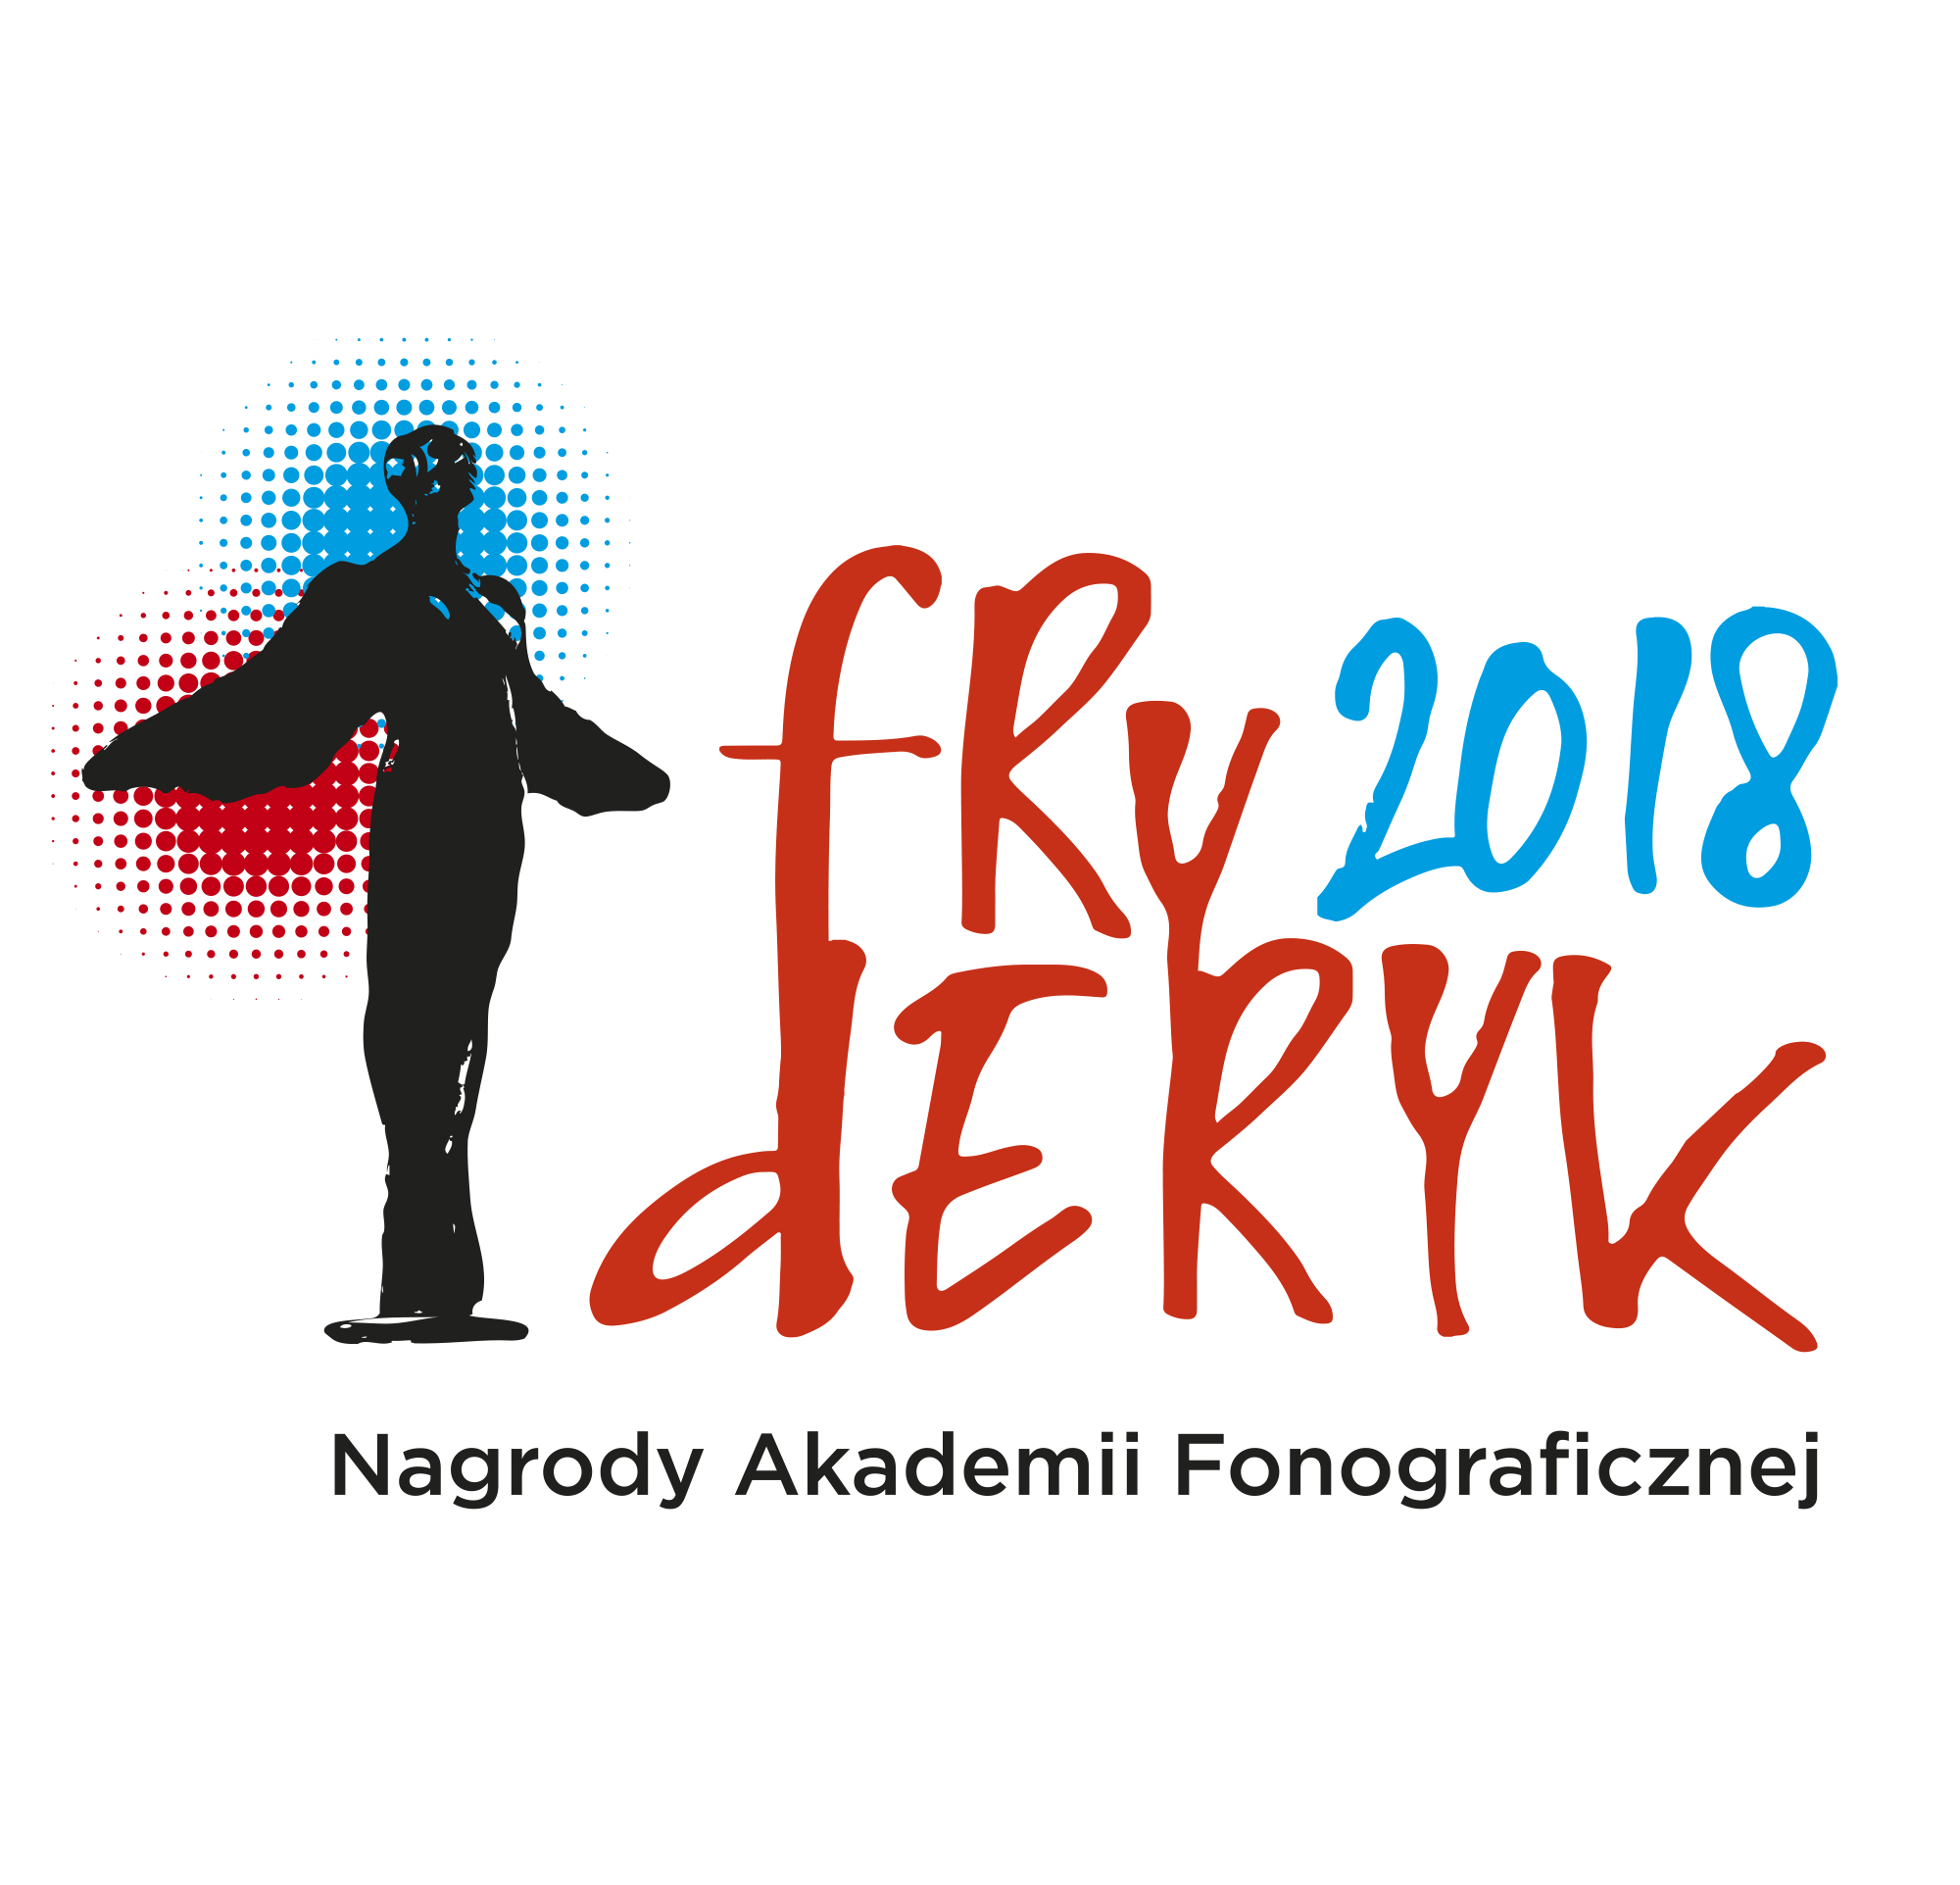 Fryderyk 2018 - daty ogłoszenia nominacji i wręczenia nagród